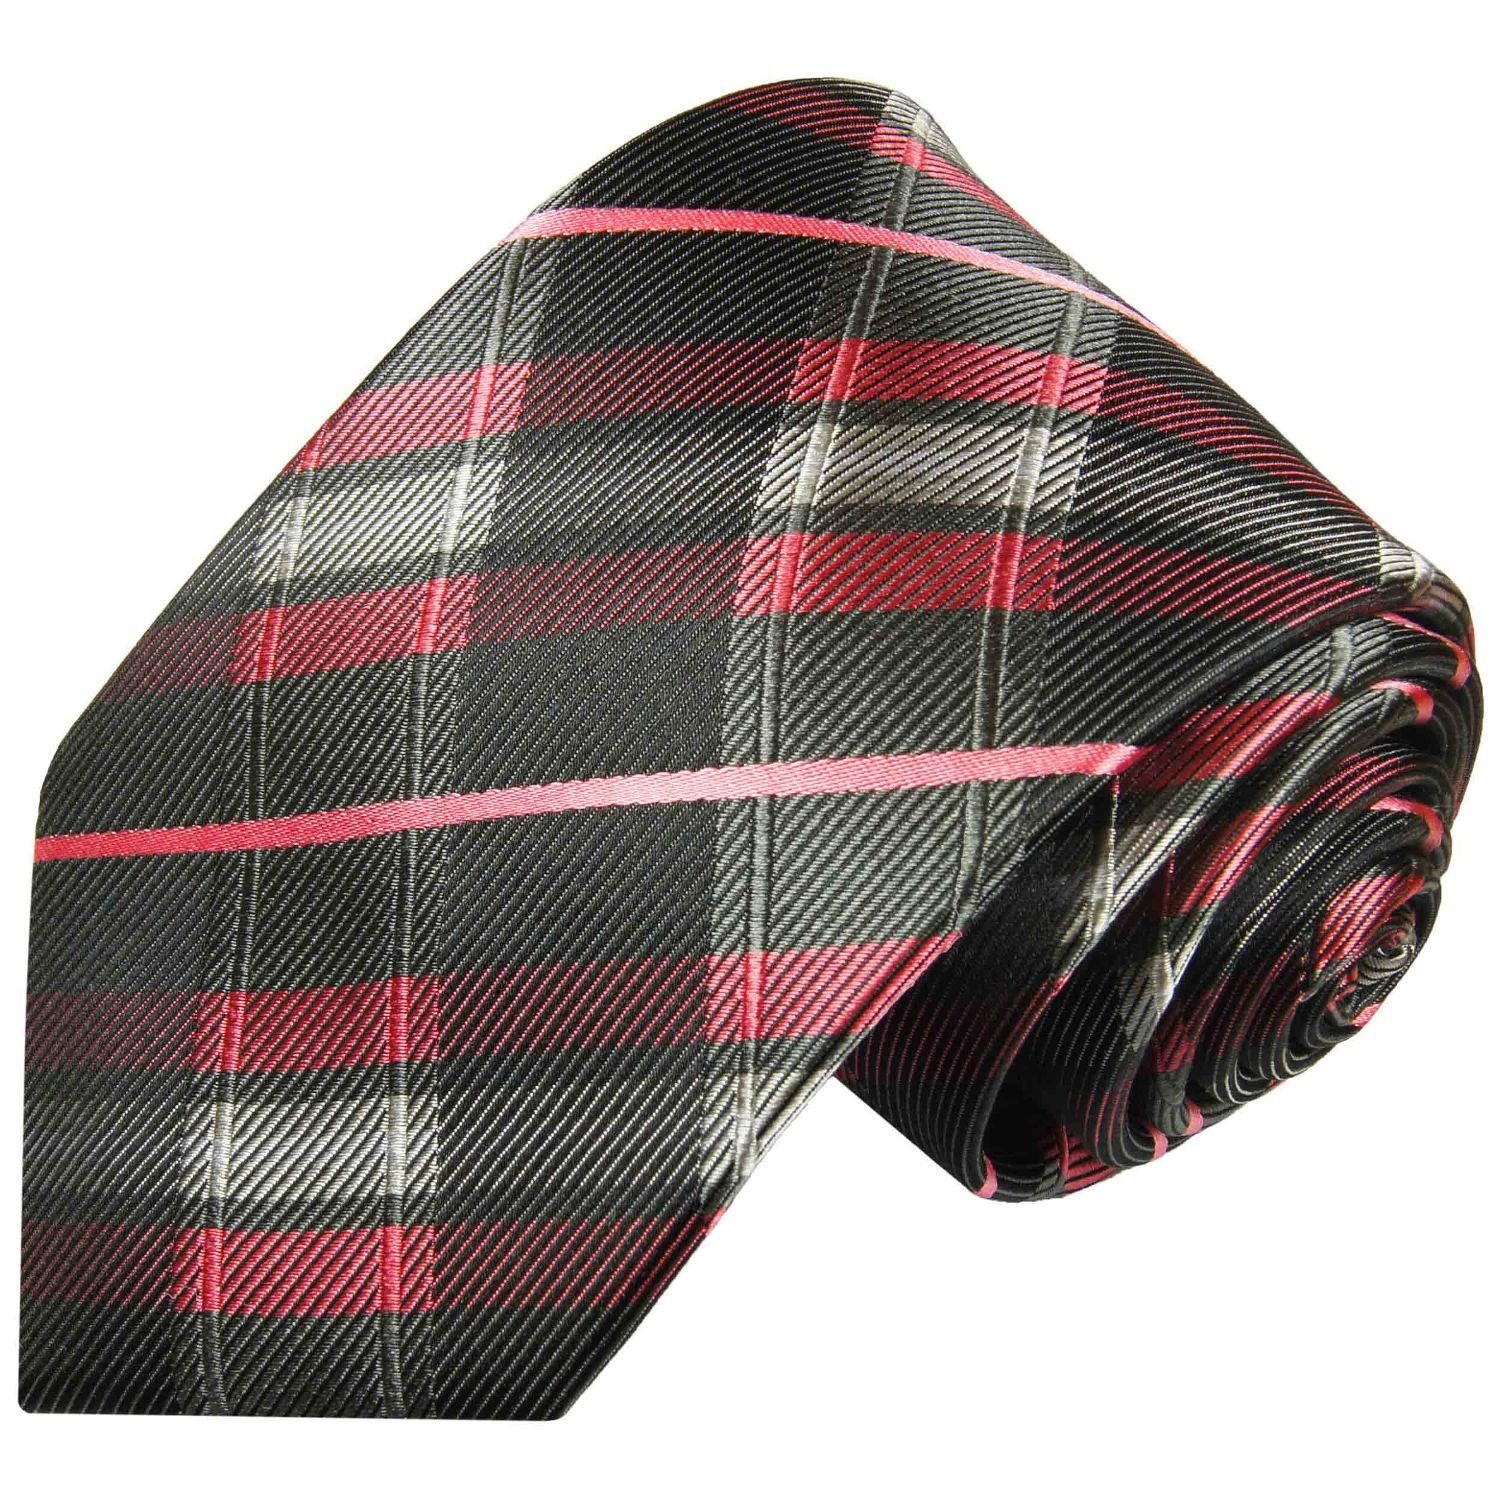 Paul Malone Krawatte Moderne Herren Seidenkrawatte Schottenmuster gestreift 100% Seide Breit (8cm), schwarz pink 2014